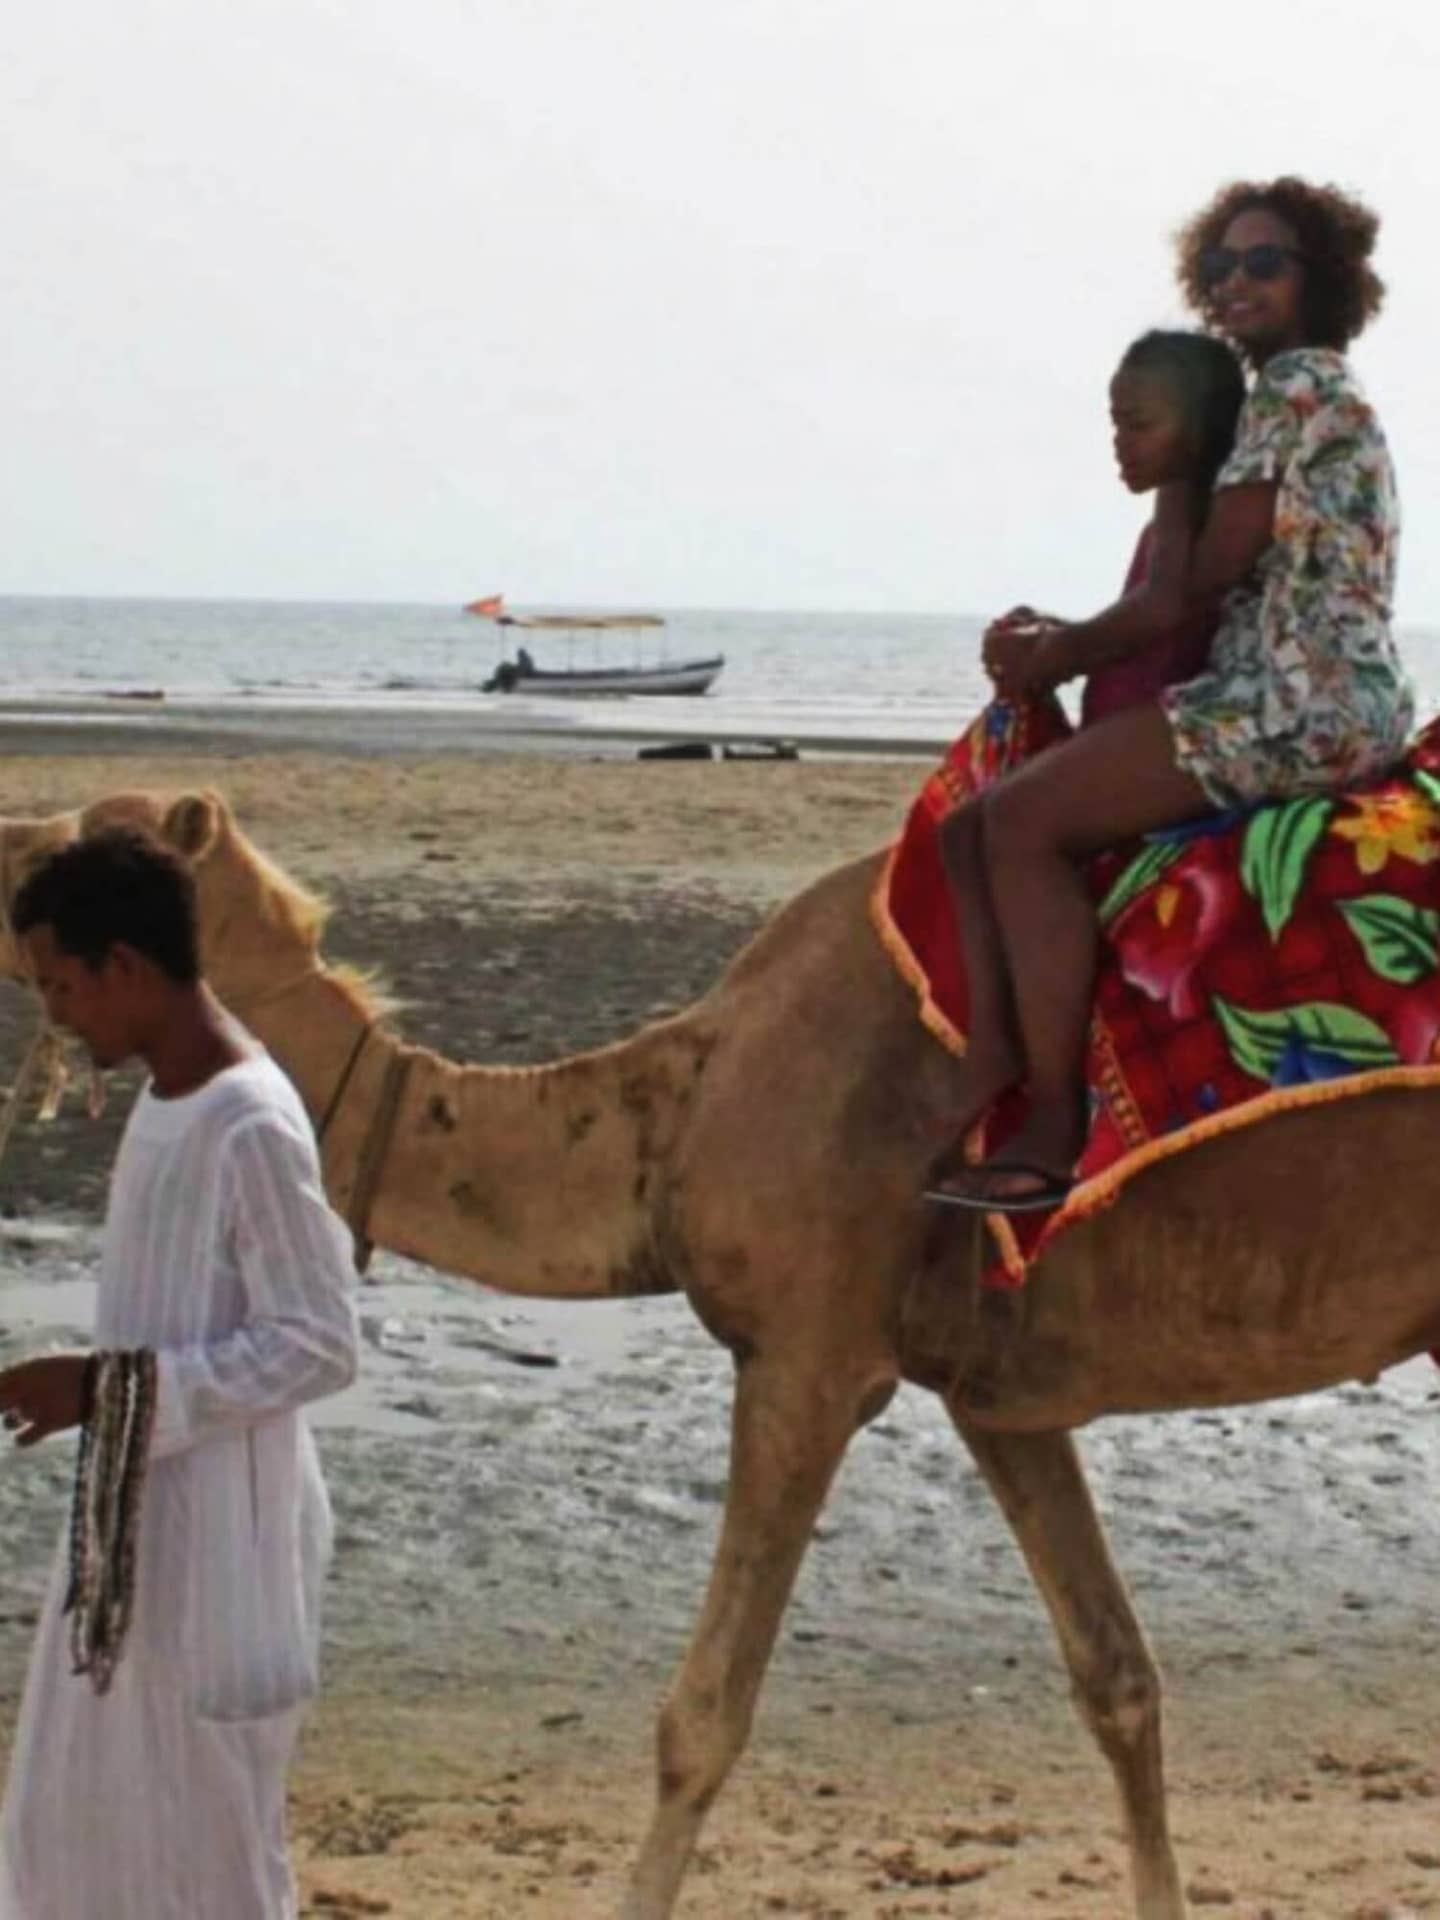 the red sea cost of Eritrea